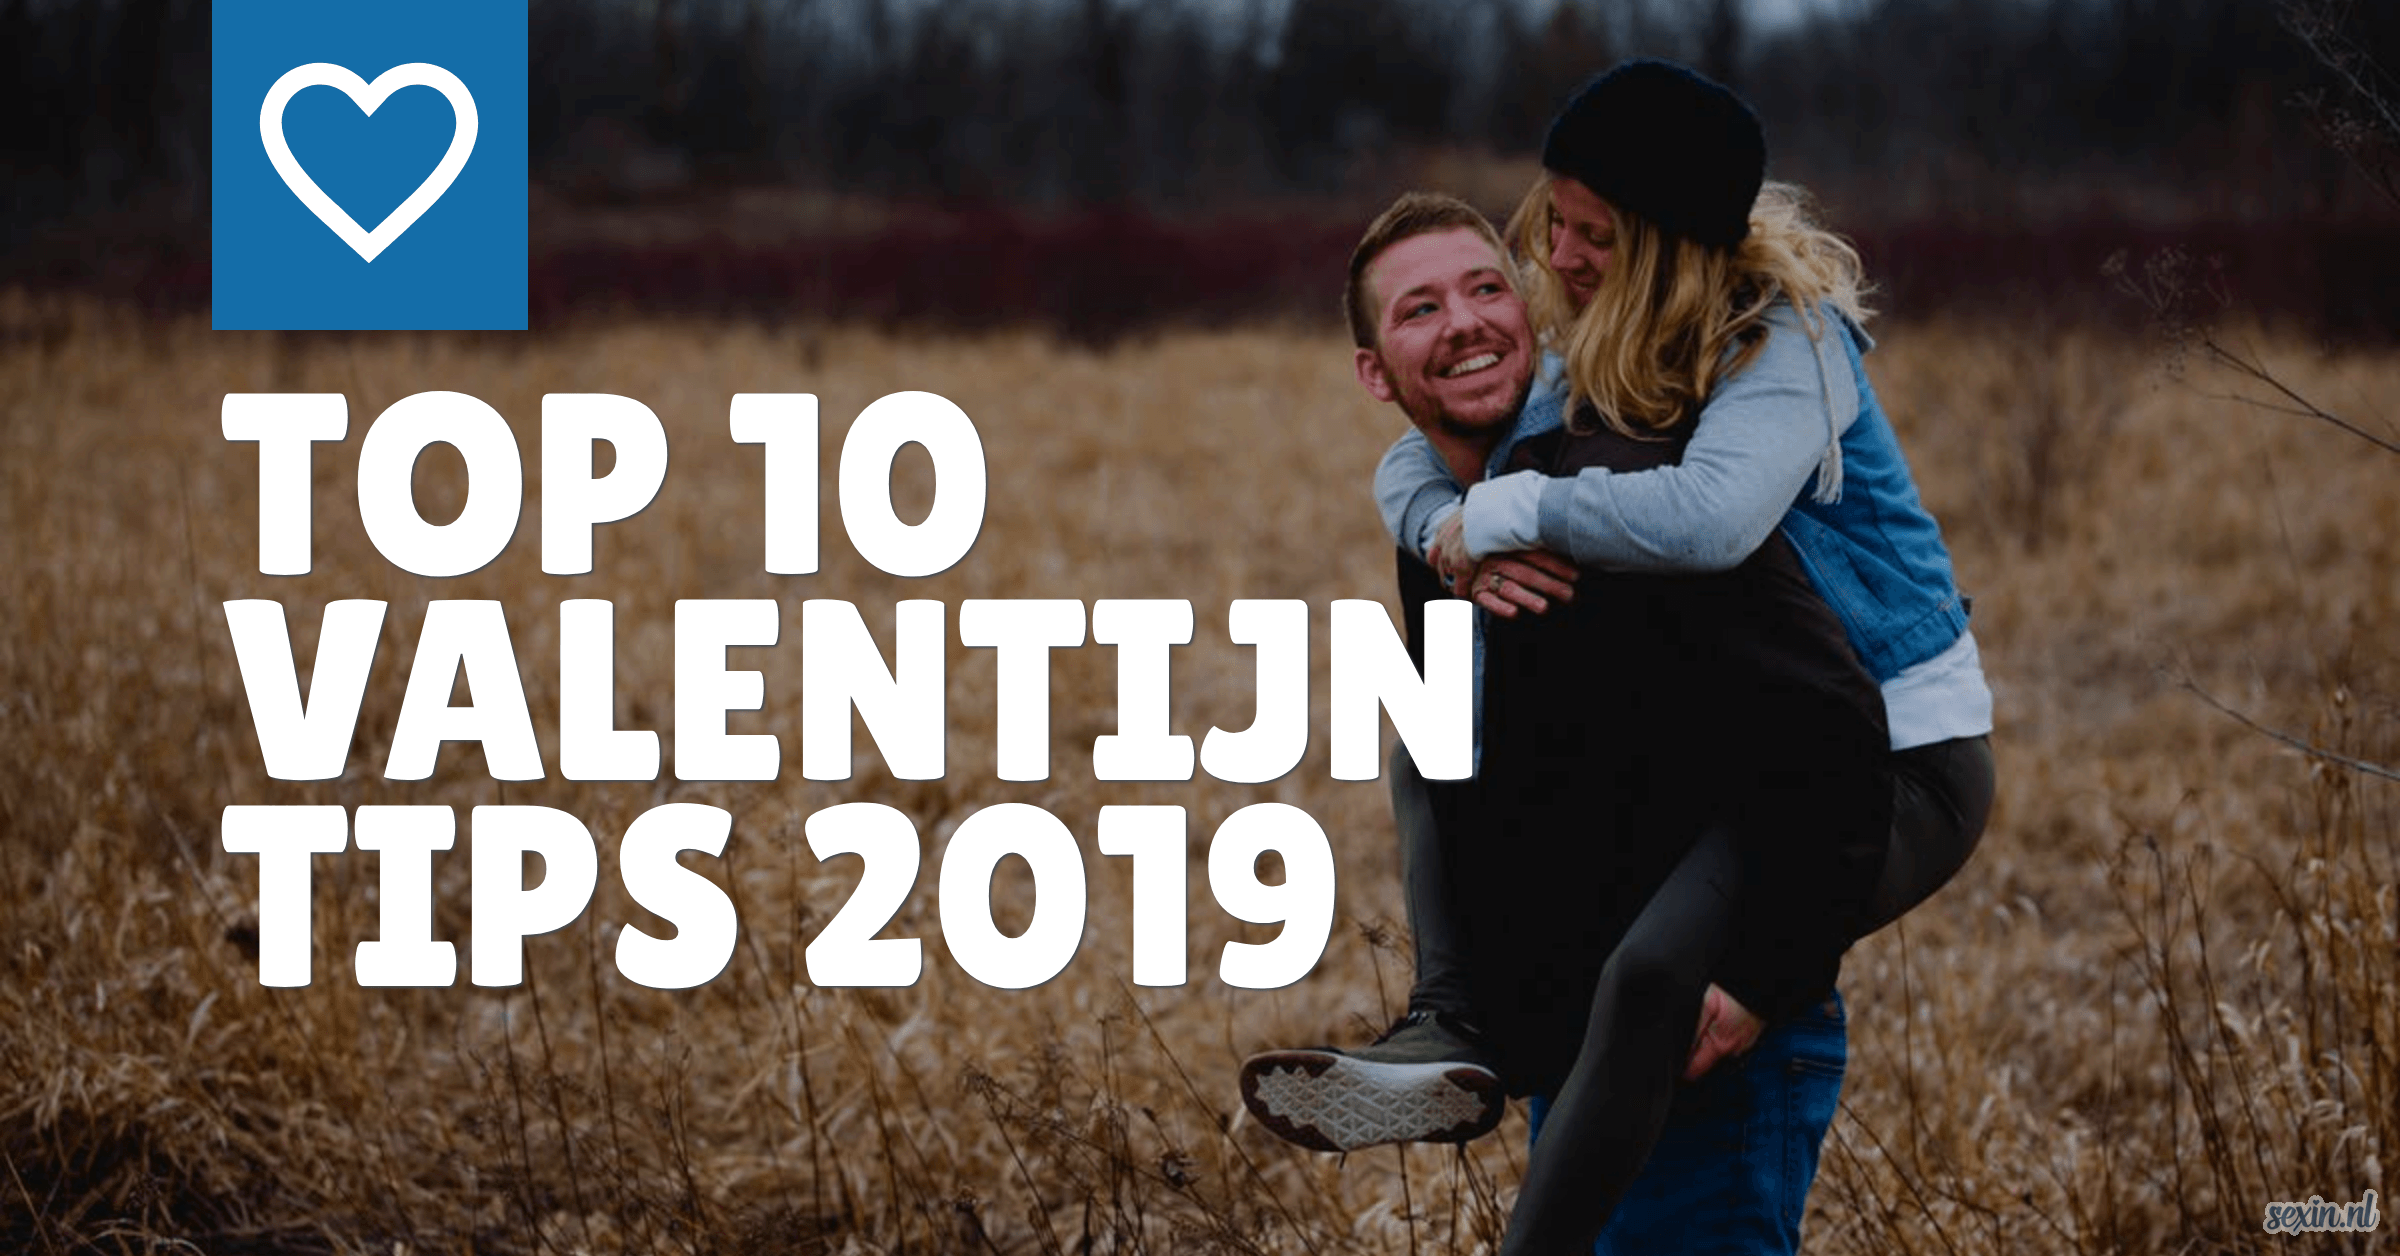 Top 10 Valentijn dates